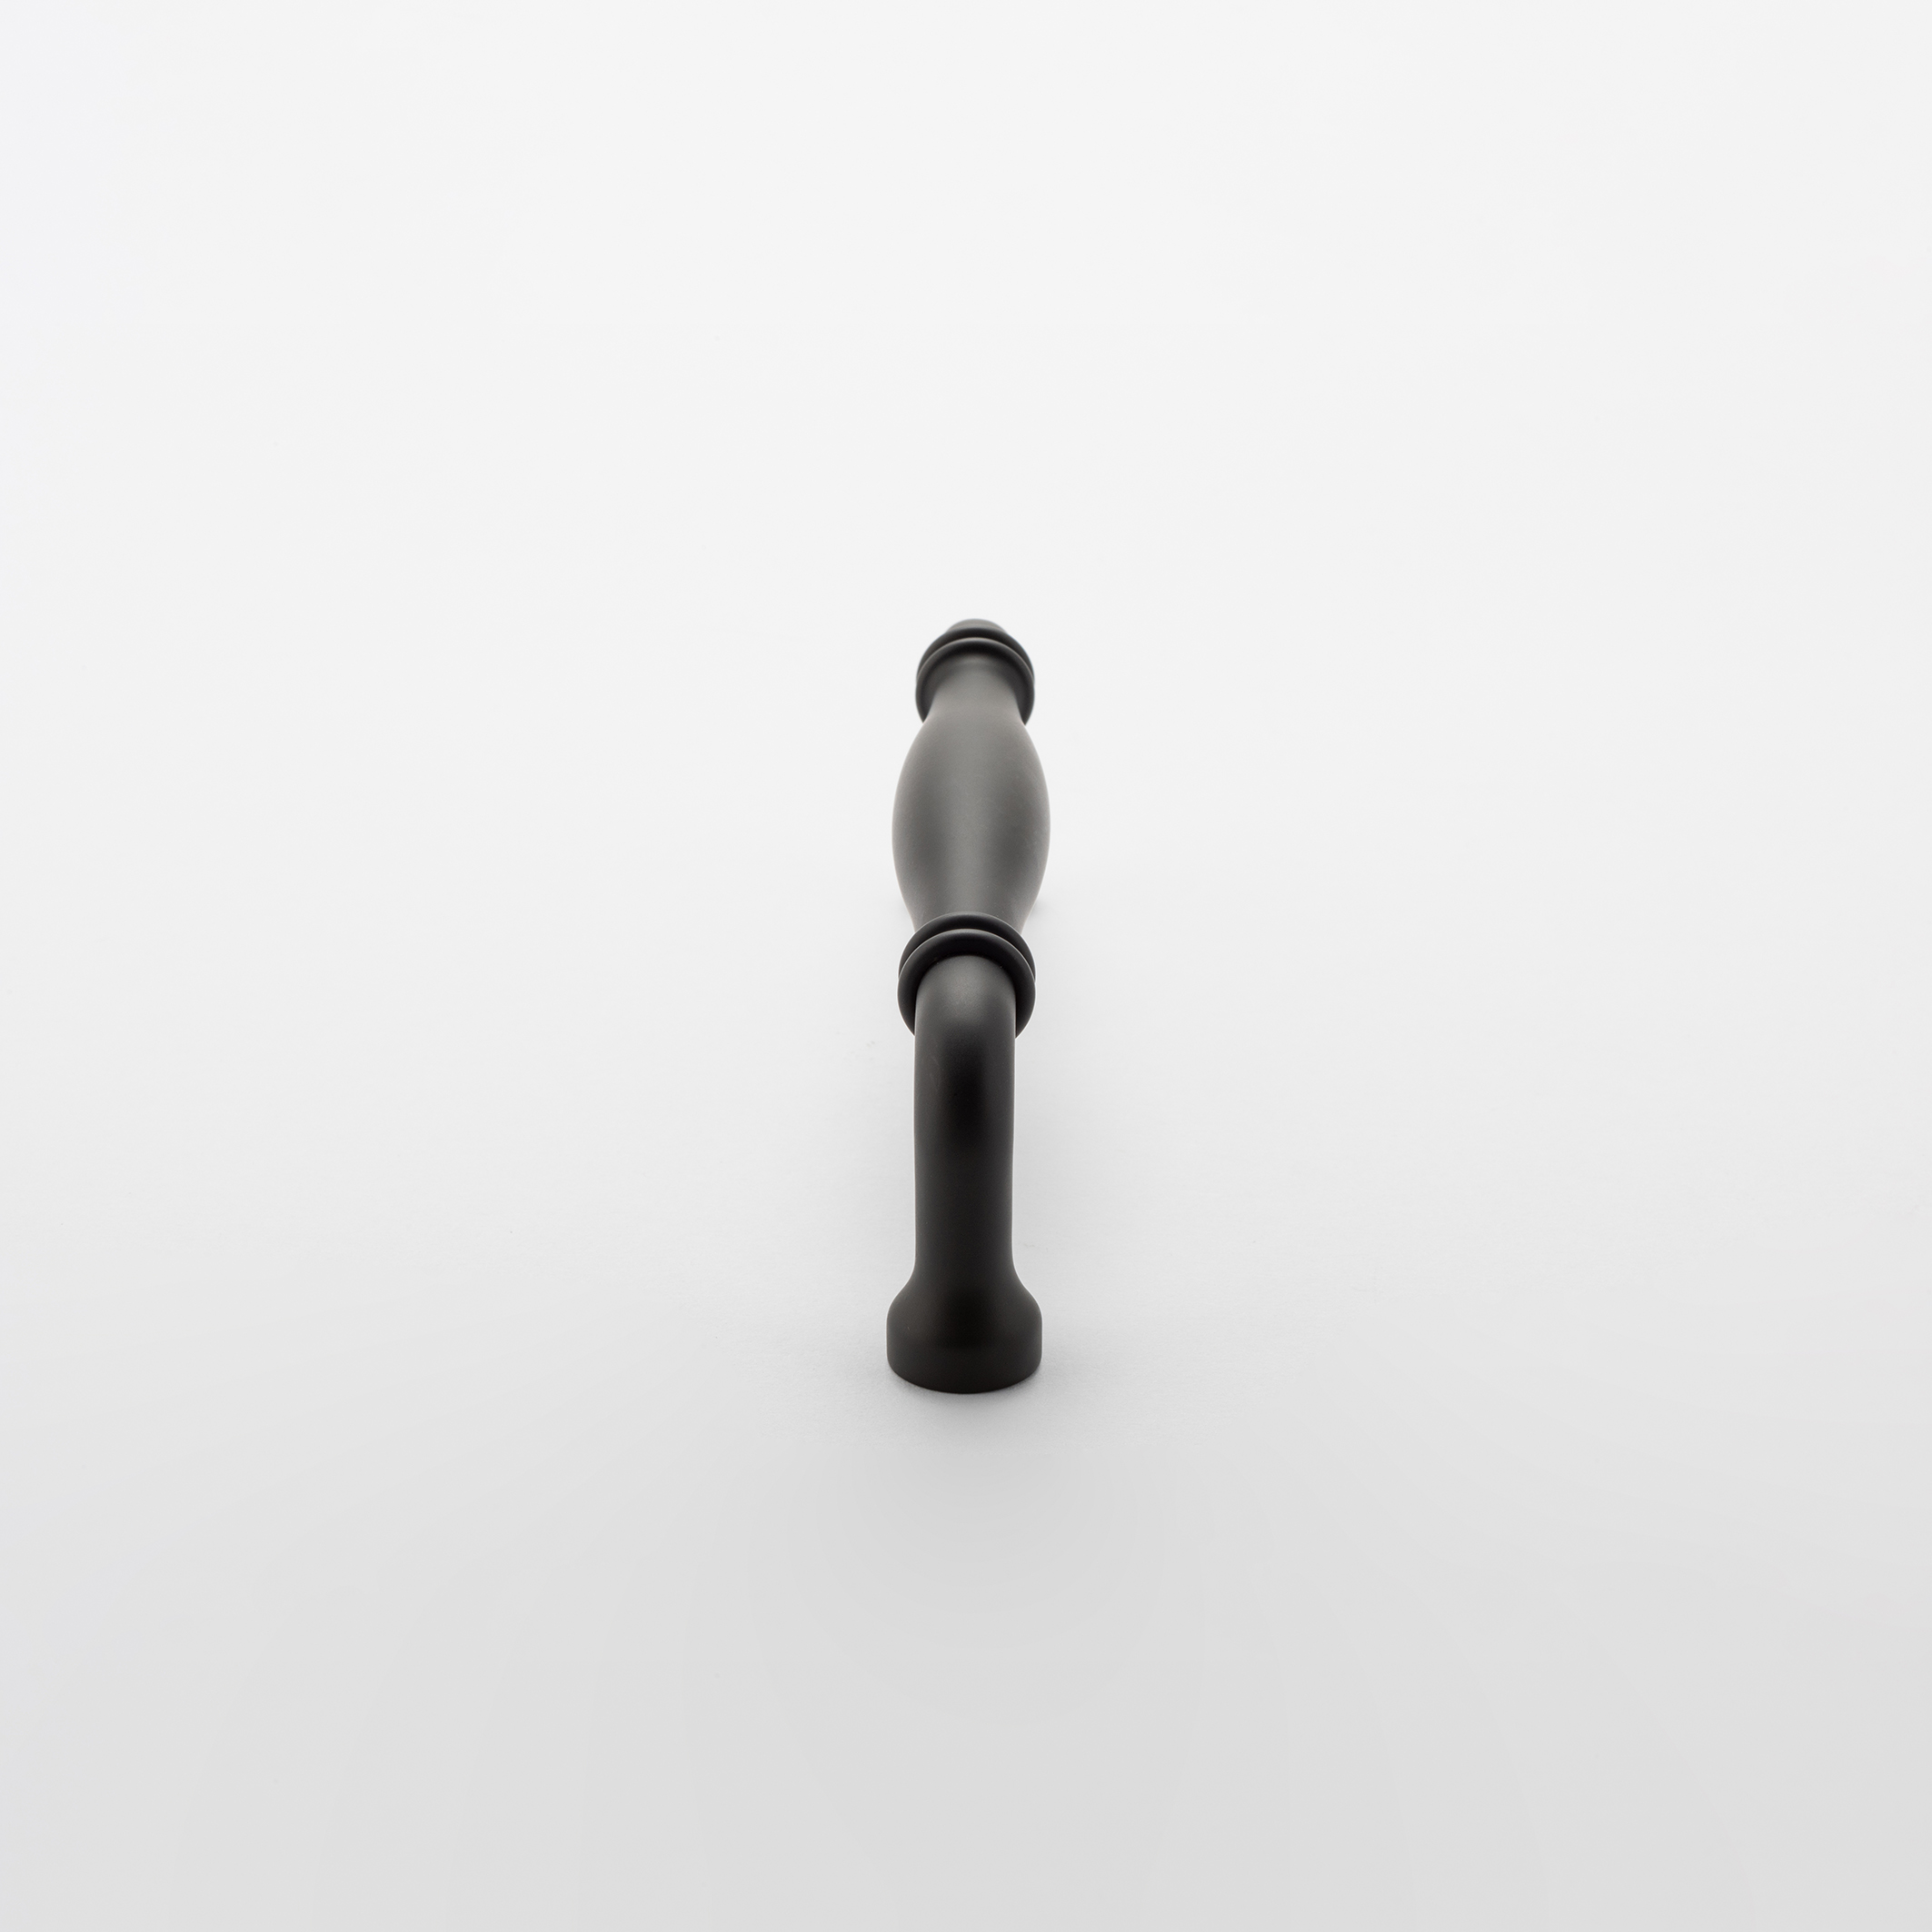 21083 - Sarlat Cabinet Pull - CTC256mm - Matt Black